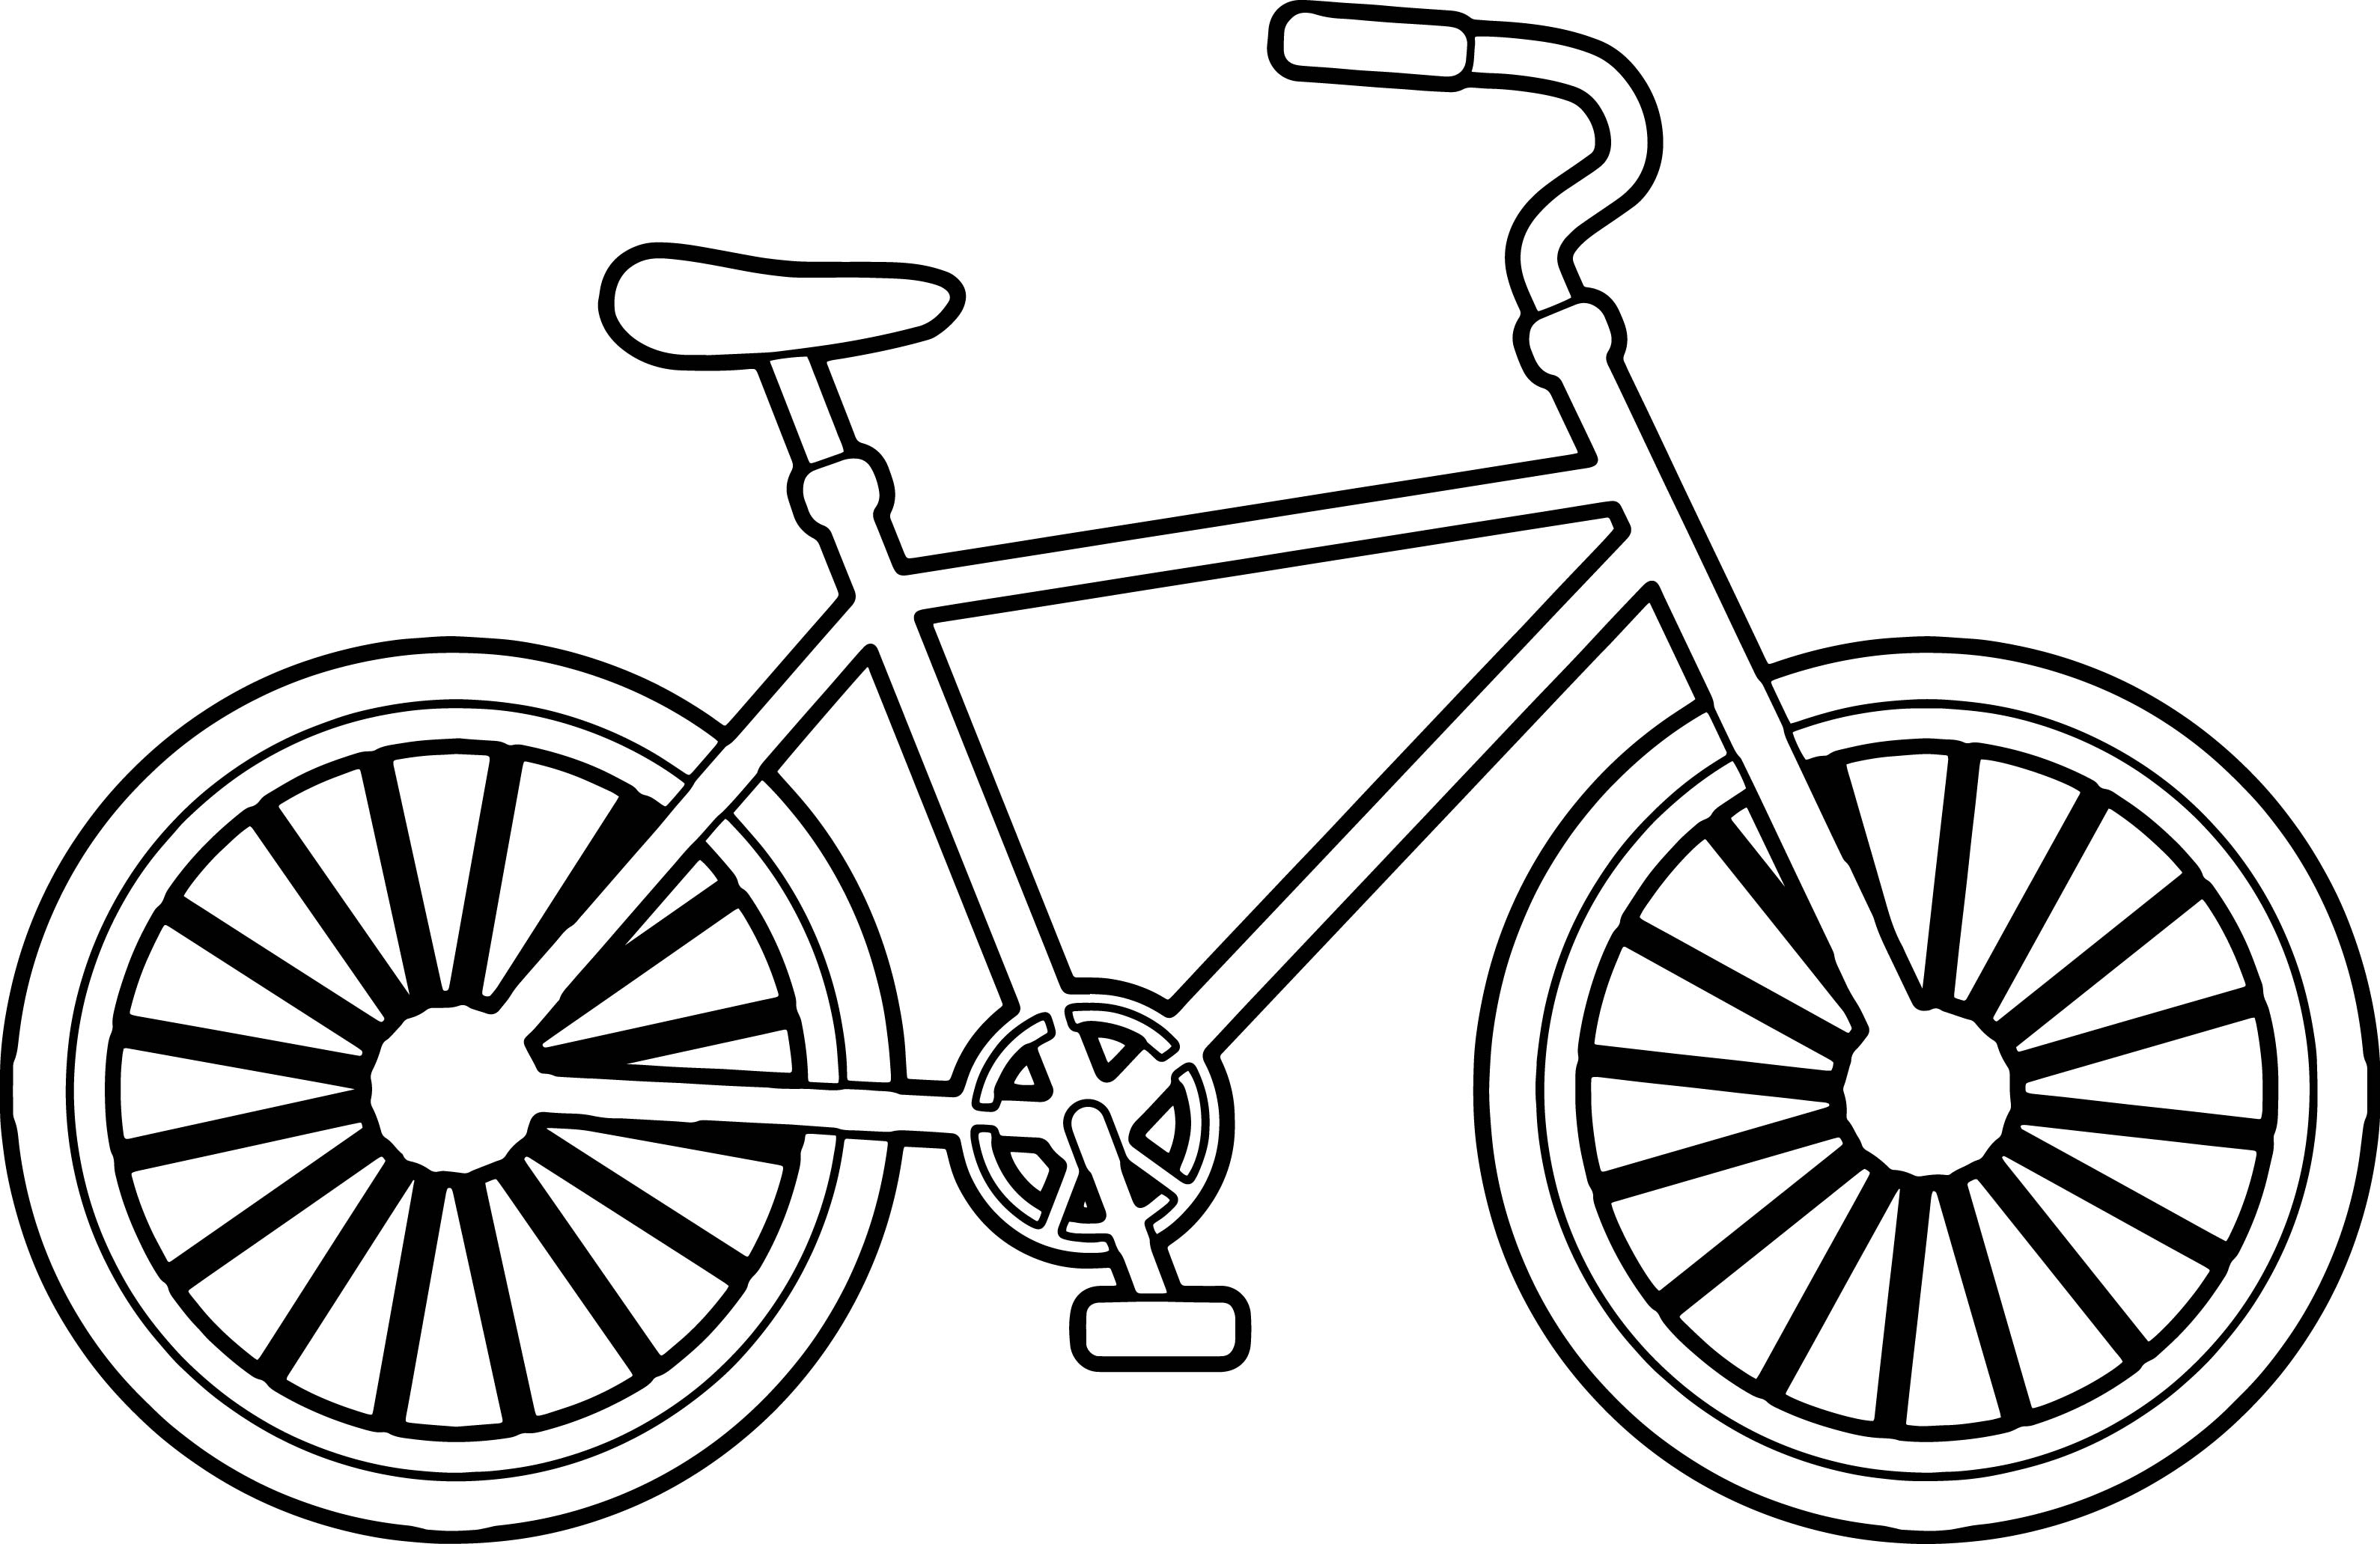 Xe đạp: Hãy cùng chiêm ngưỡng hình ảnh về chiếc xe đạp thân thiện với môi trường và còn là một món đồ chơi giúp bạn rèn luyện sức khỏe. Từ các thiết kế sáng tạo, đến những nỗi lo lắng của người lái xe, bạn sẽ khám phá được tất cả về xe đạp.